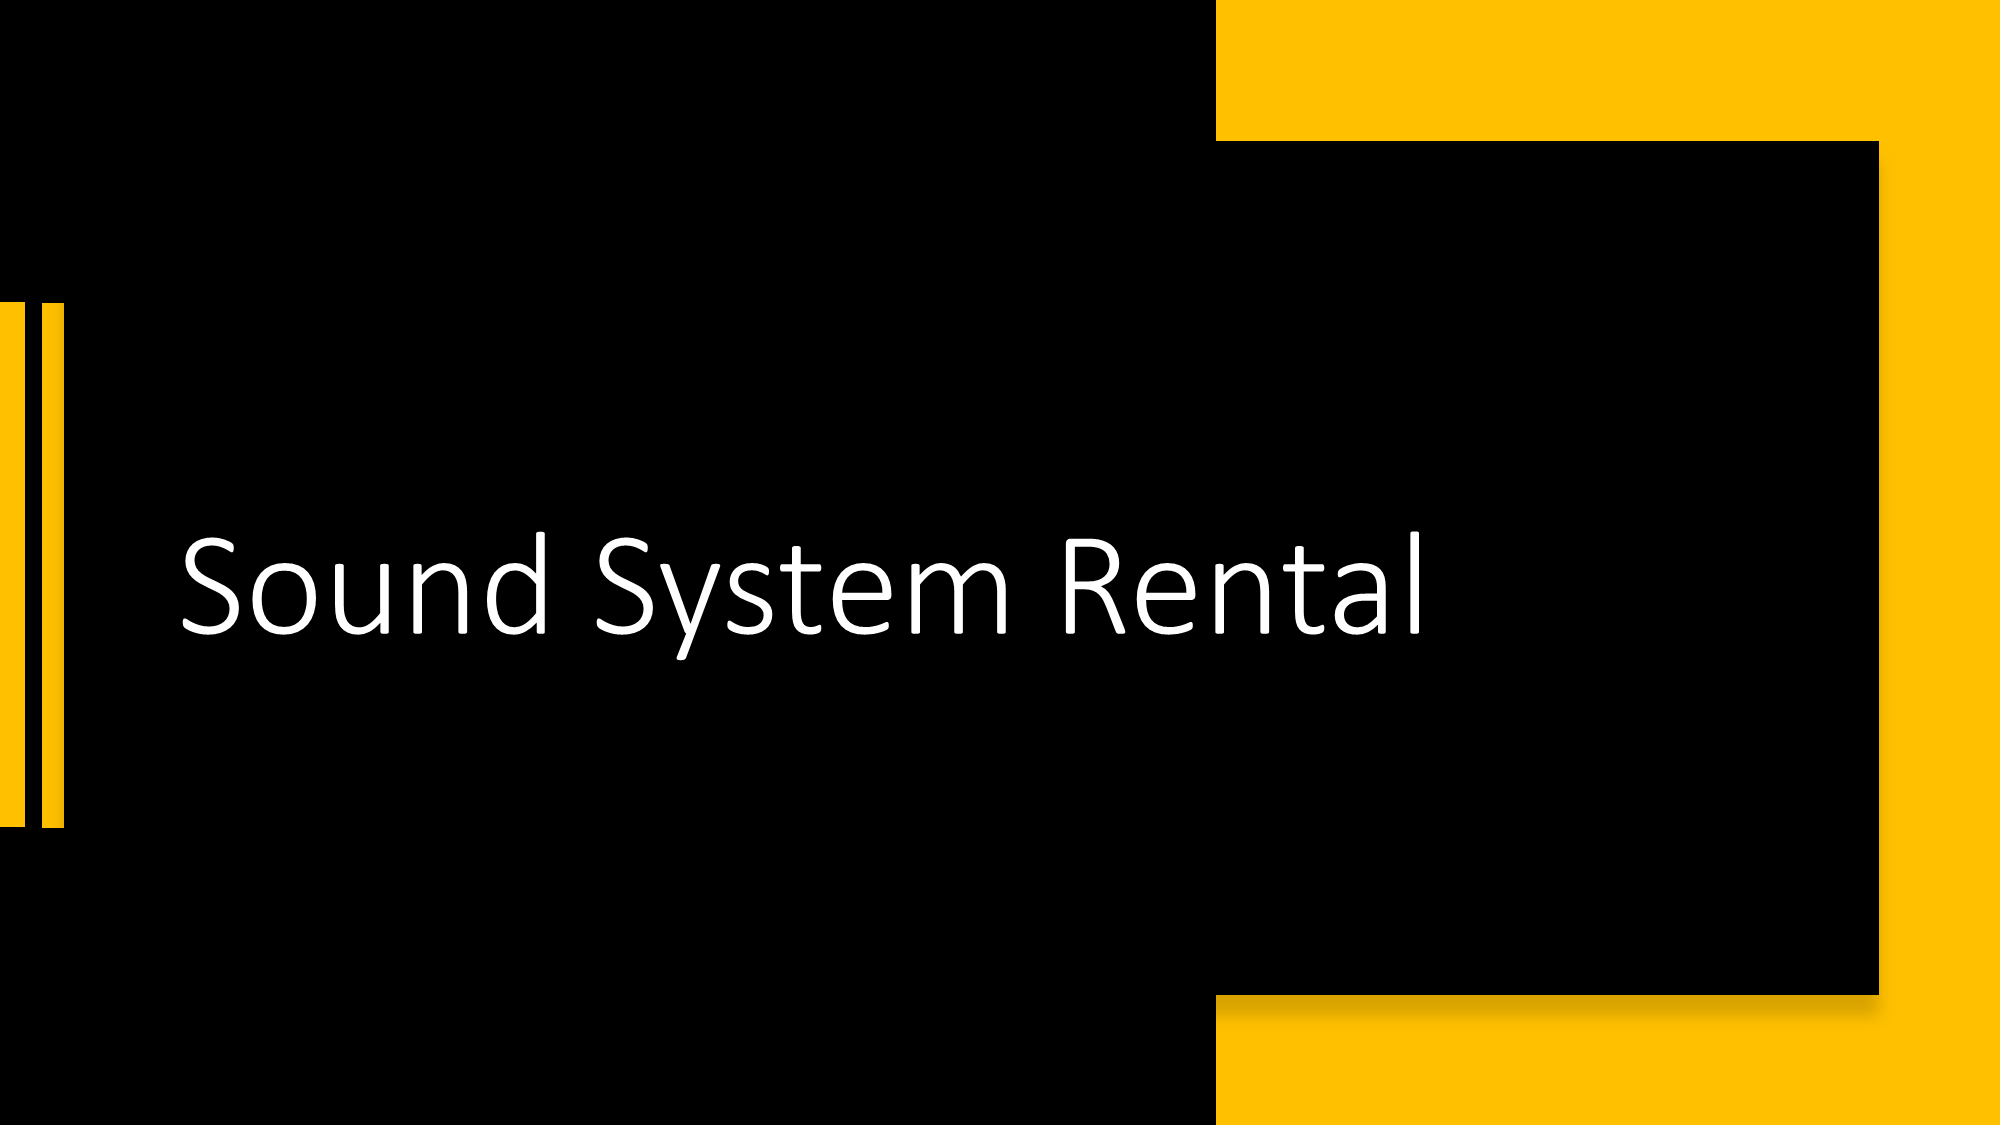 AV System rentals in UAE